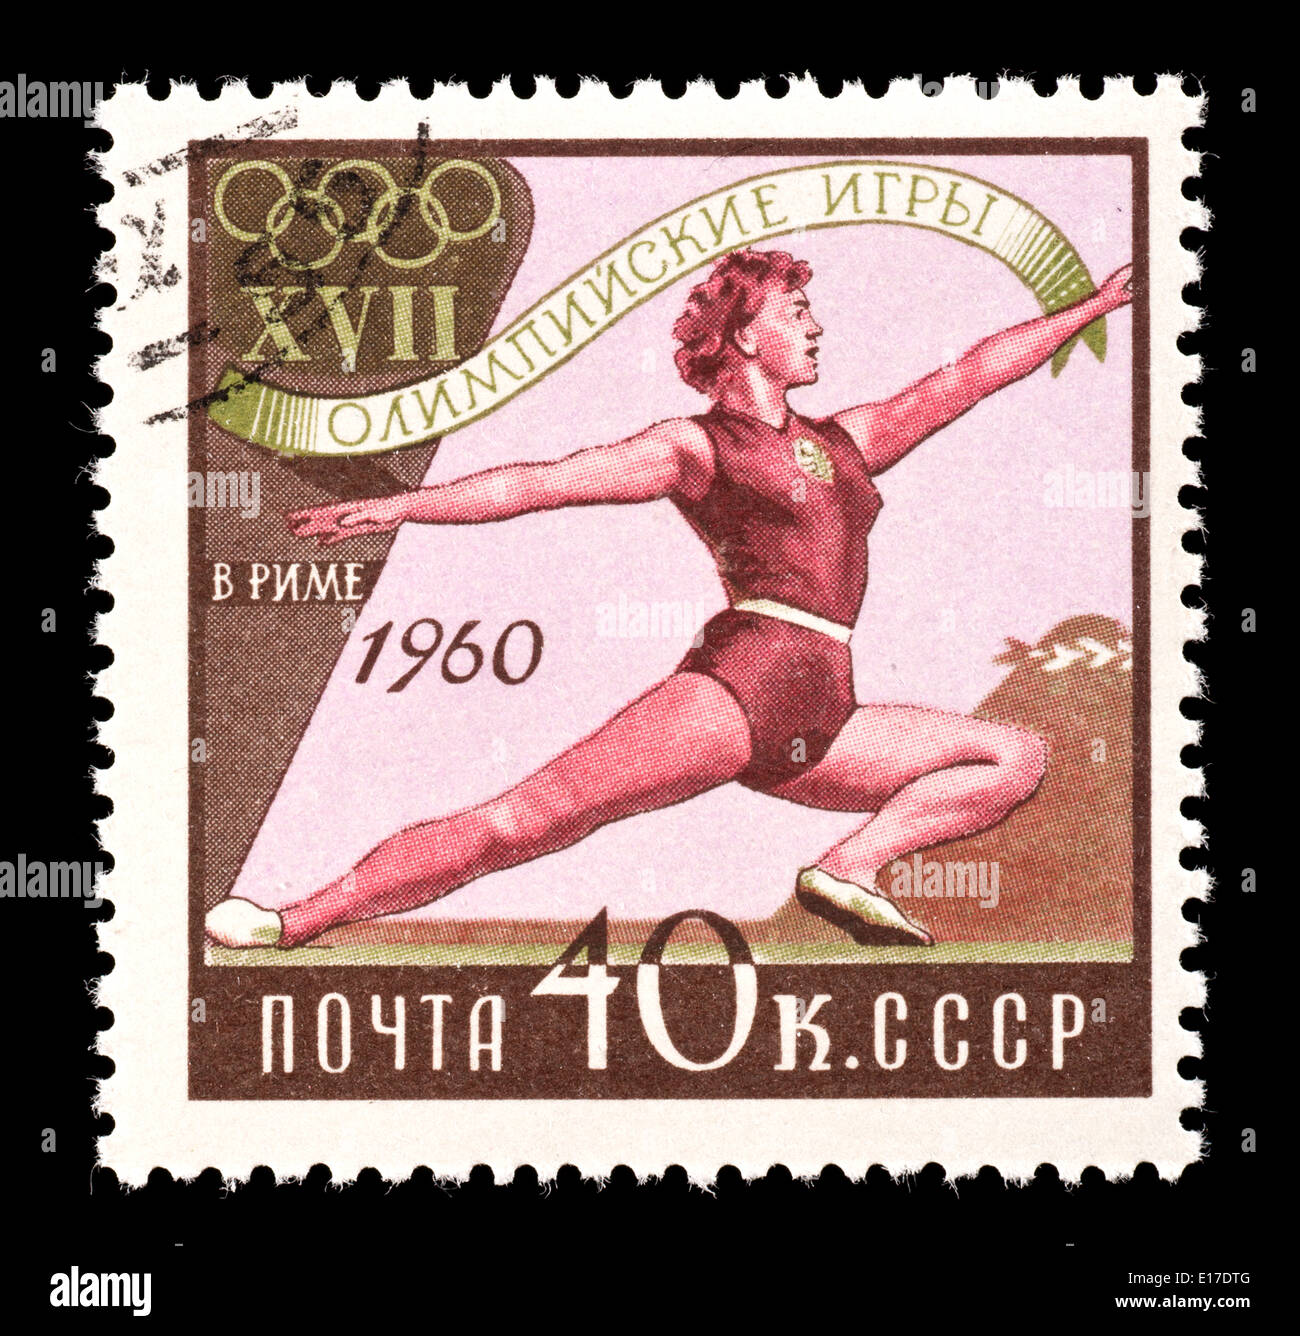 Timbre-poste de l'Union soviétique représentant gymnaste, émis pour les 1960 Jeux Olympiques d'été de 1920 à Rome. Banque D'Images